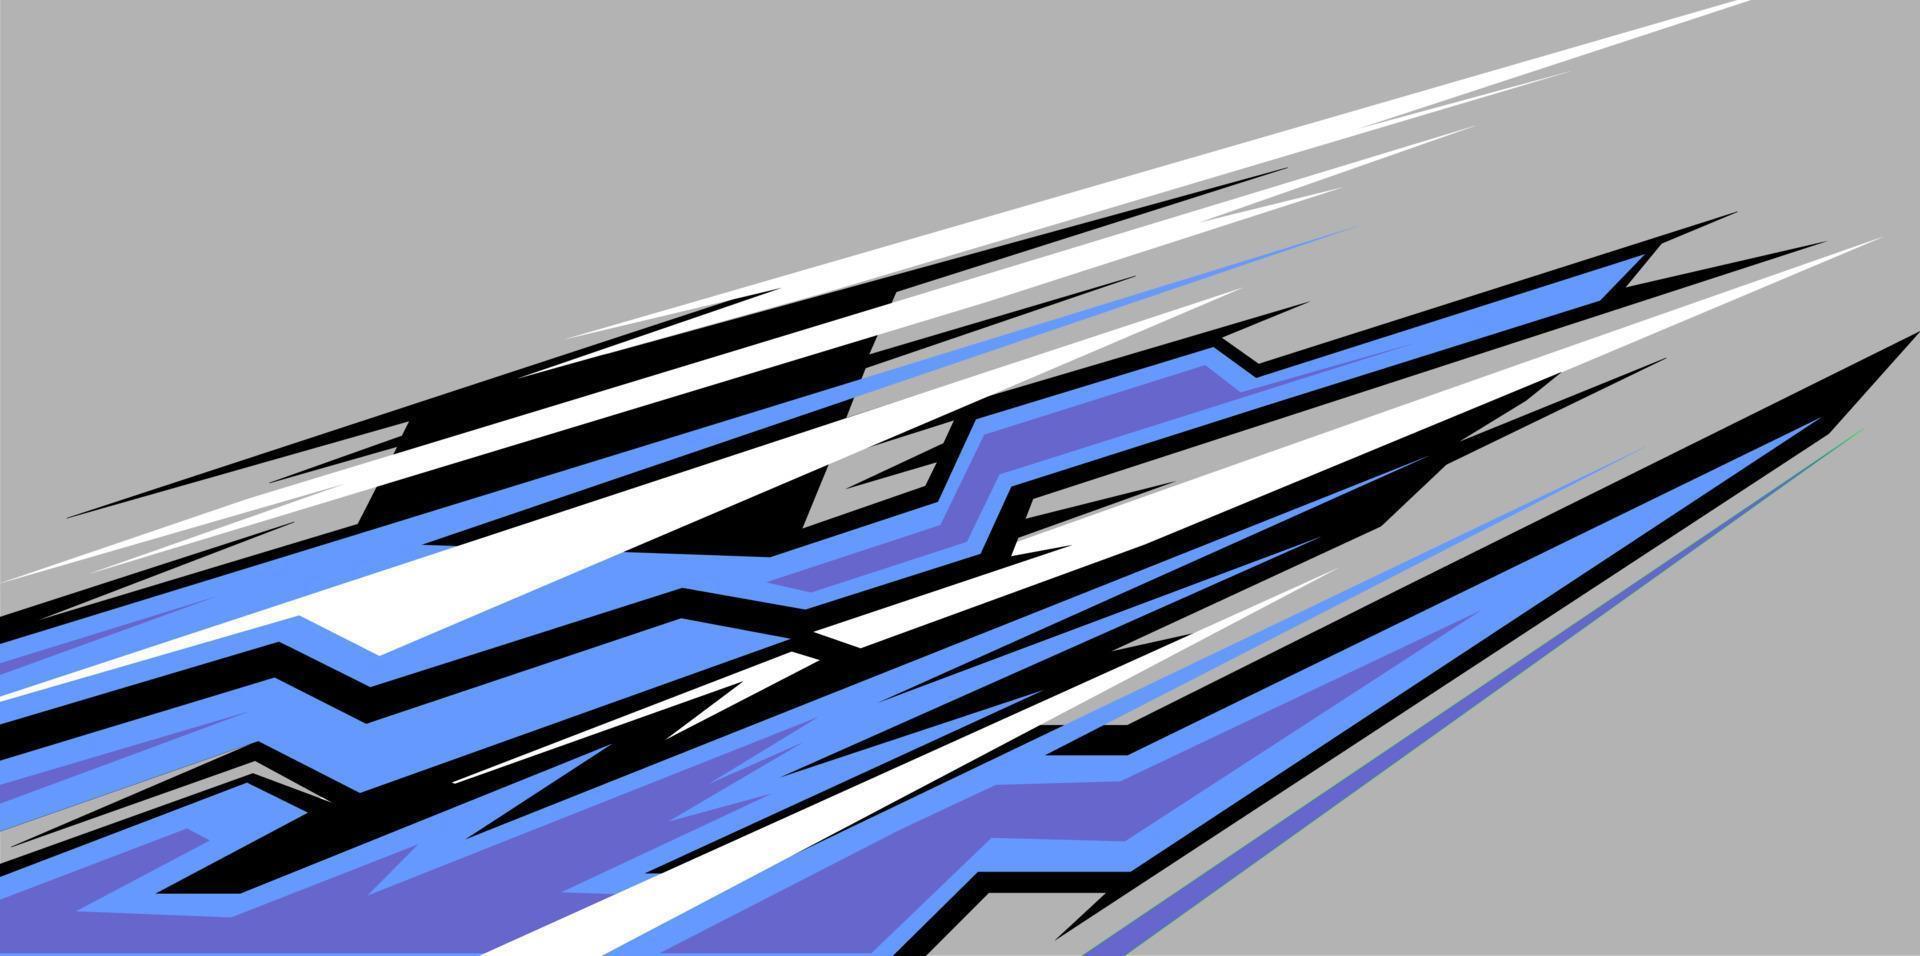 Rennen Streifen Illustration Hintergrund Design vektor